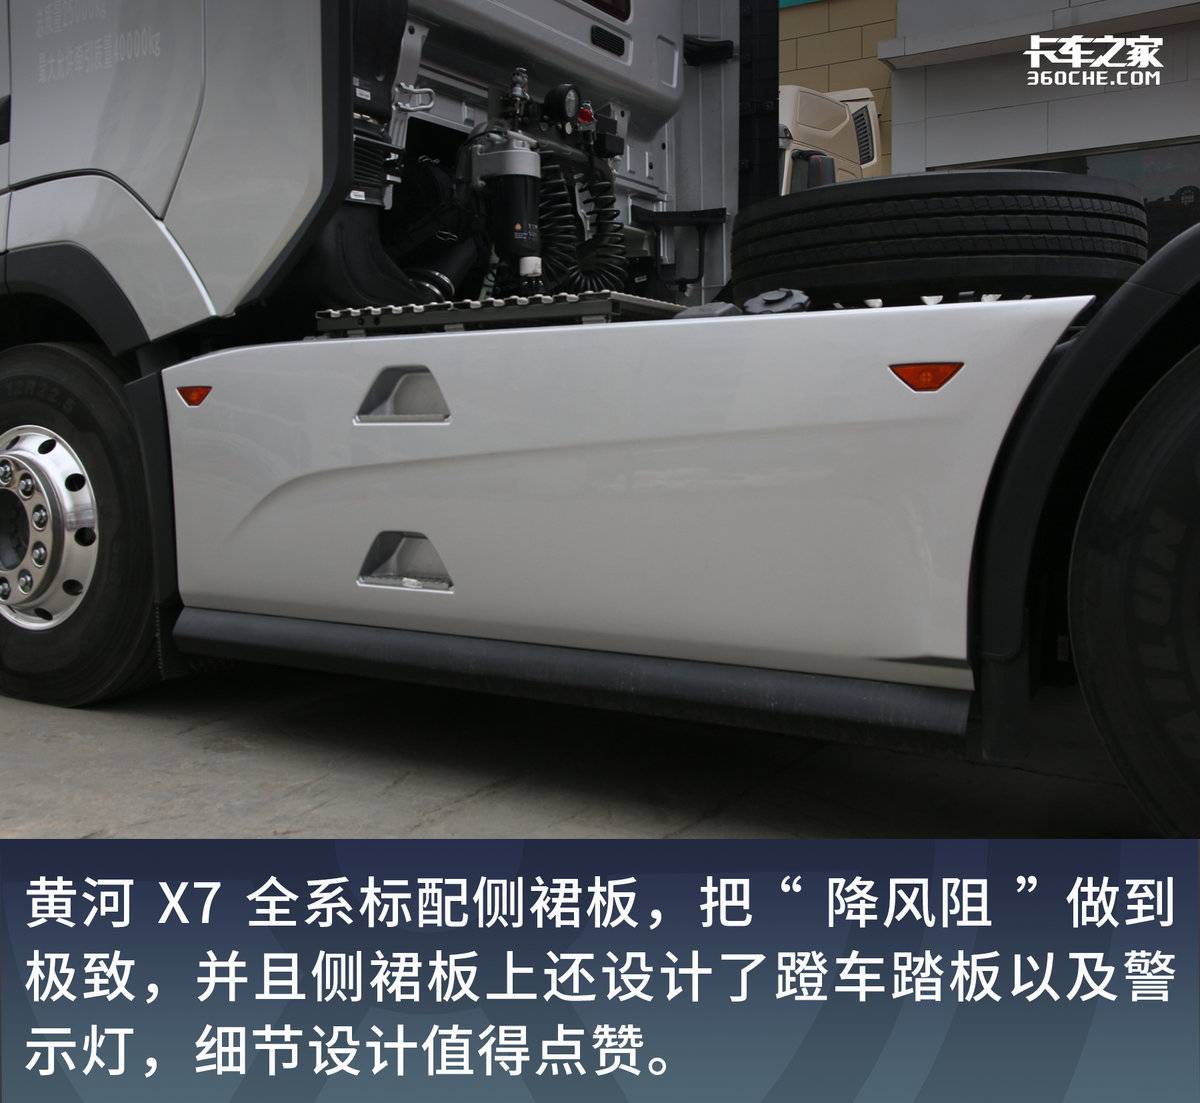 报价45.8万 黄河X7搭载570马力发动机 16挡AMT搭配气囊桥